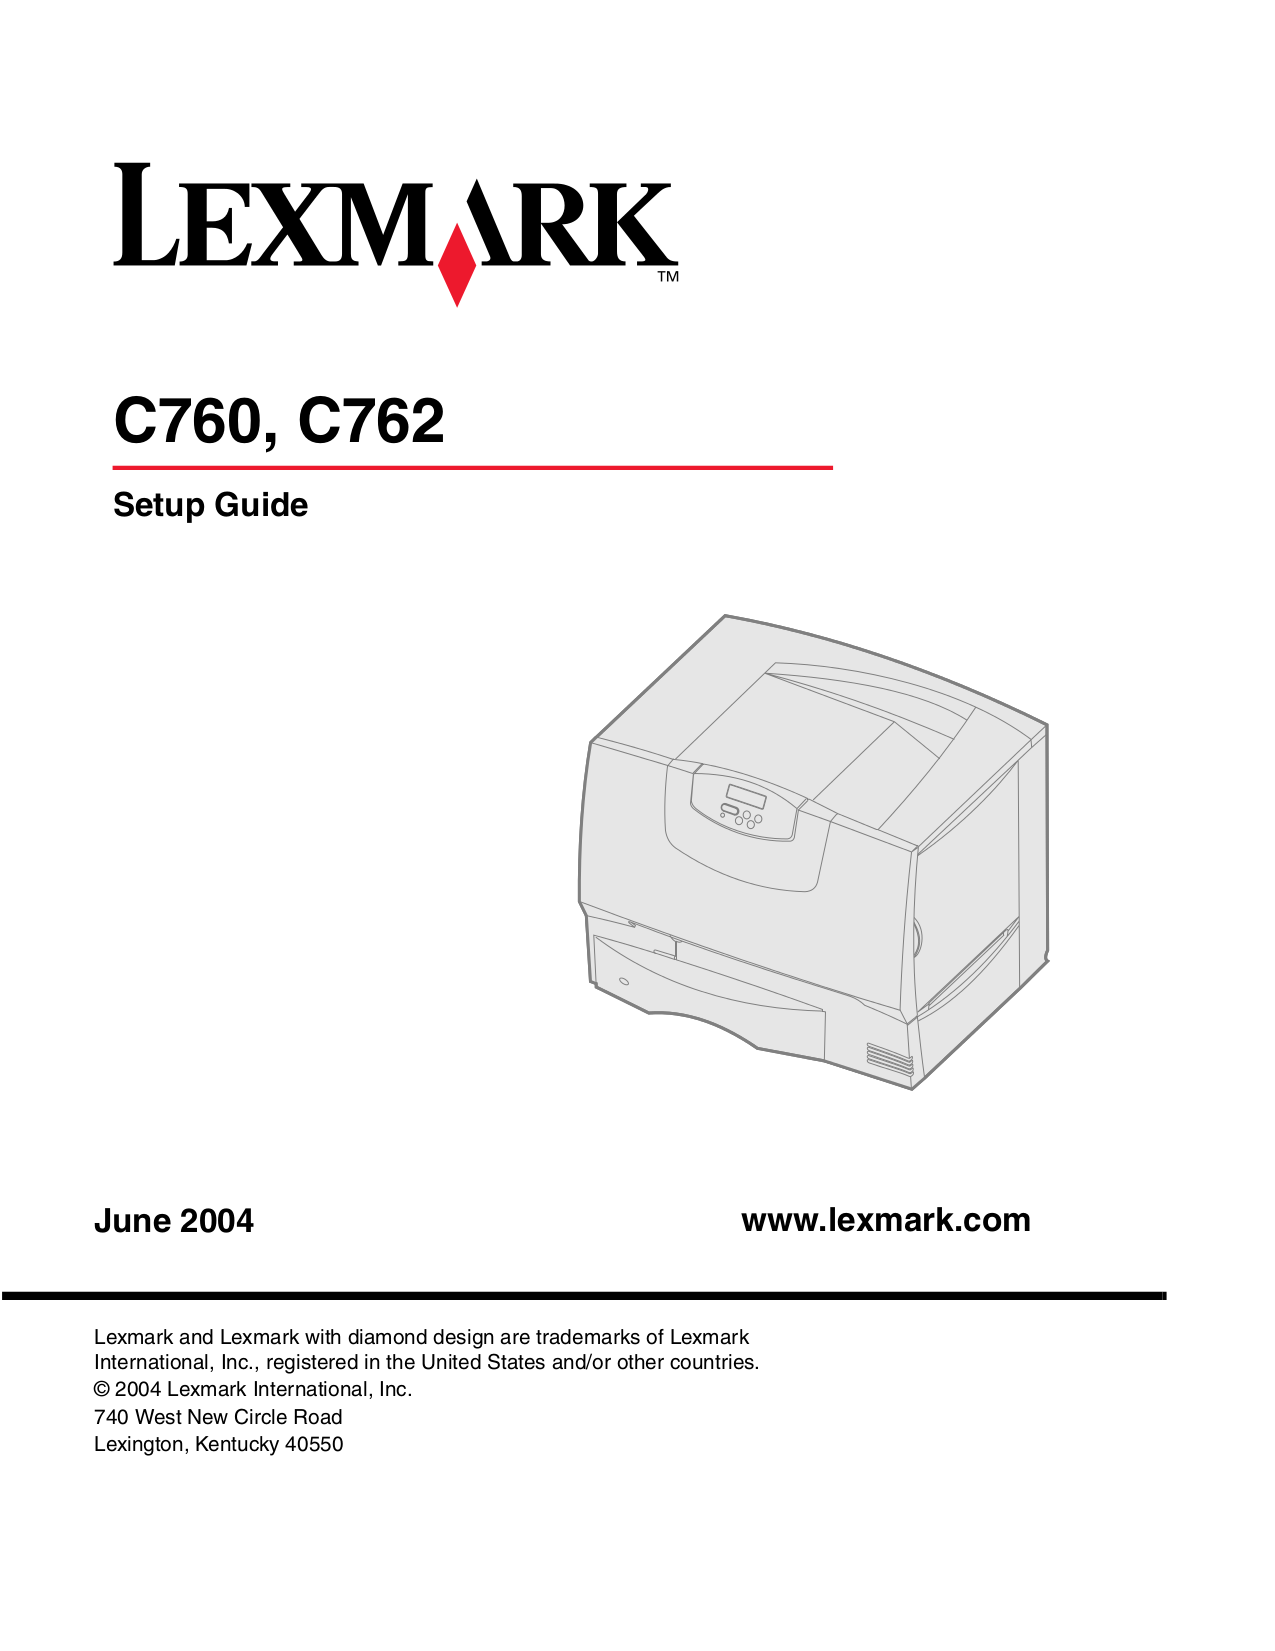 Download lexmark printer installation